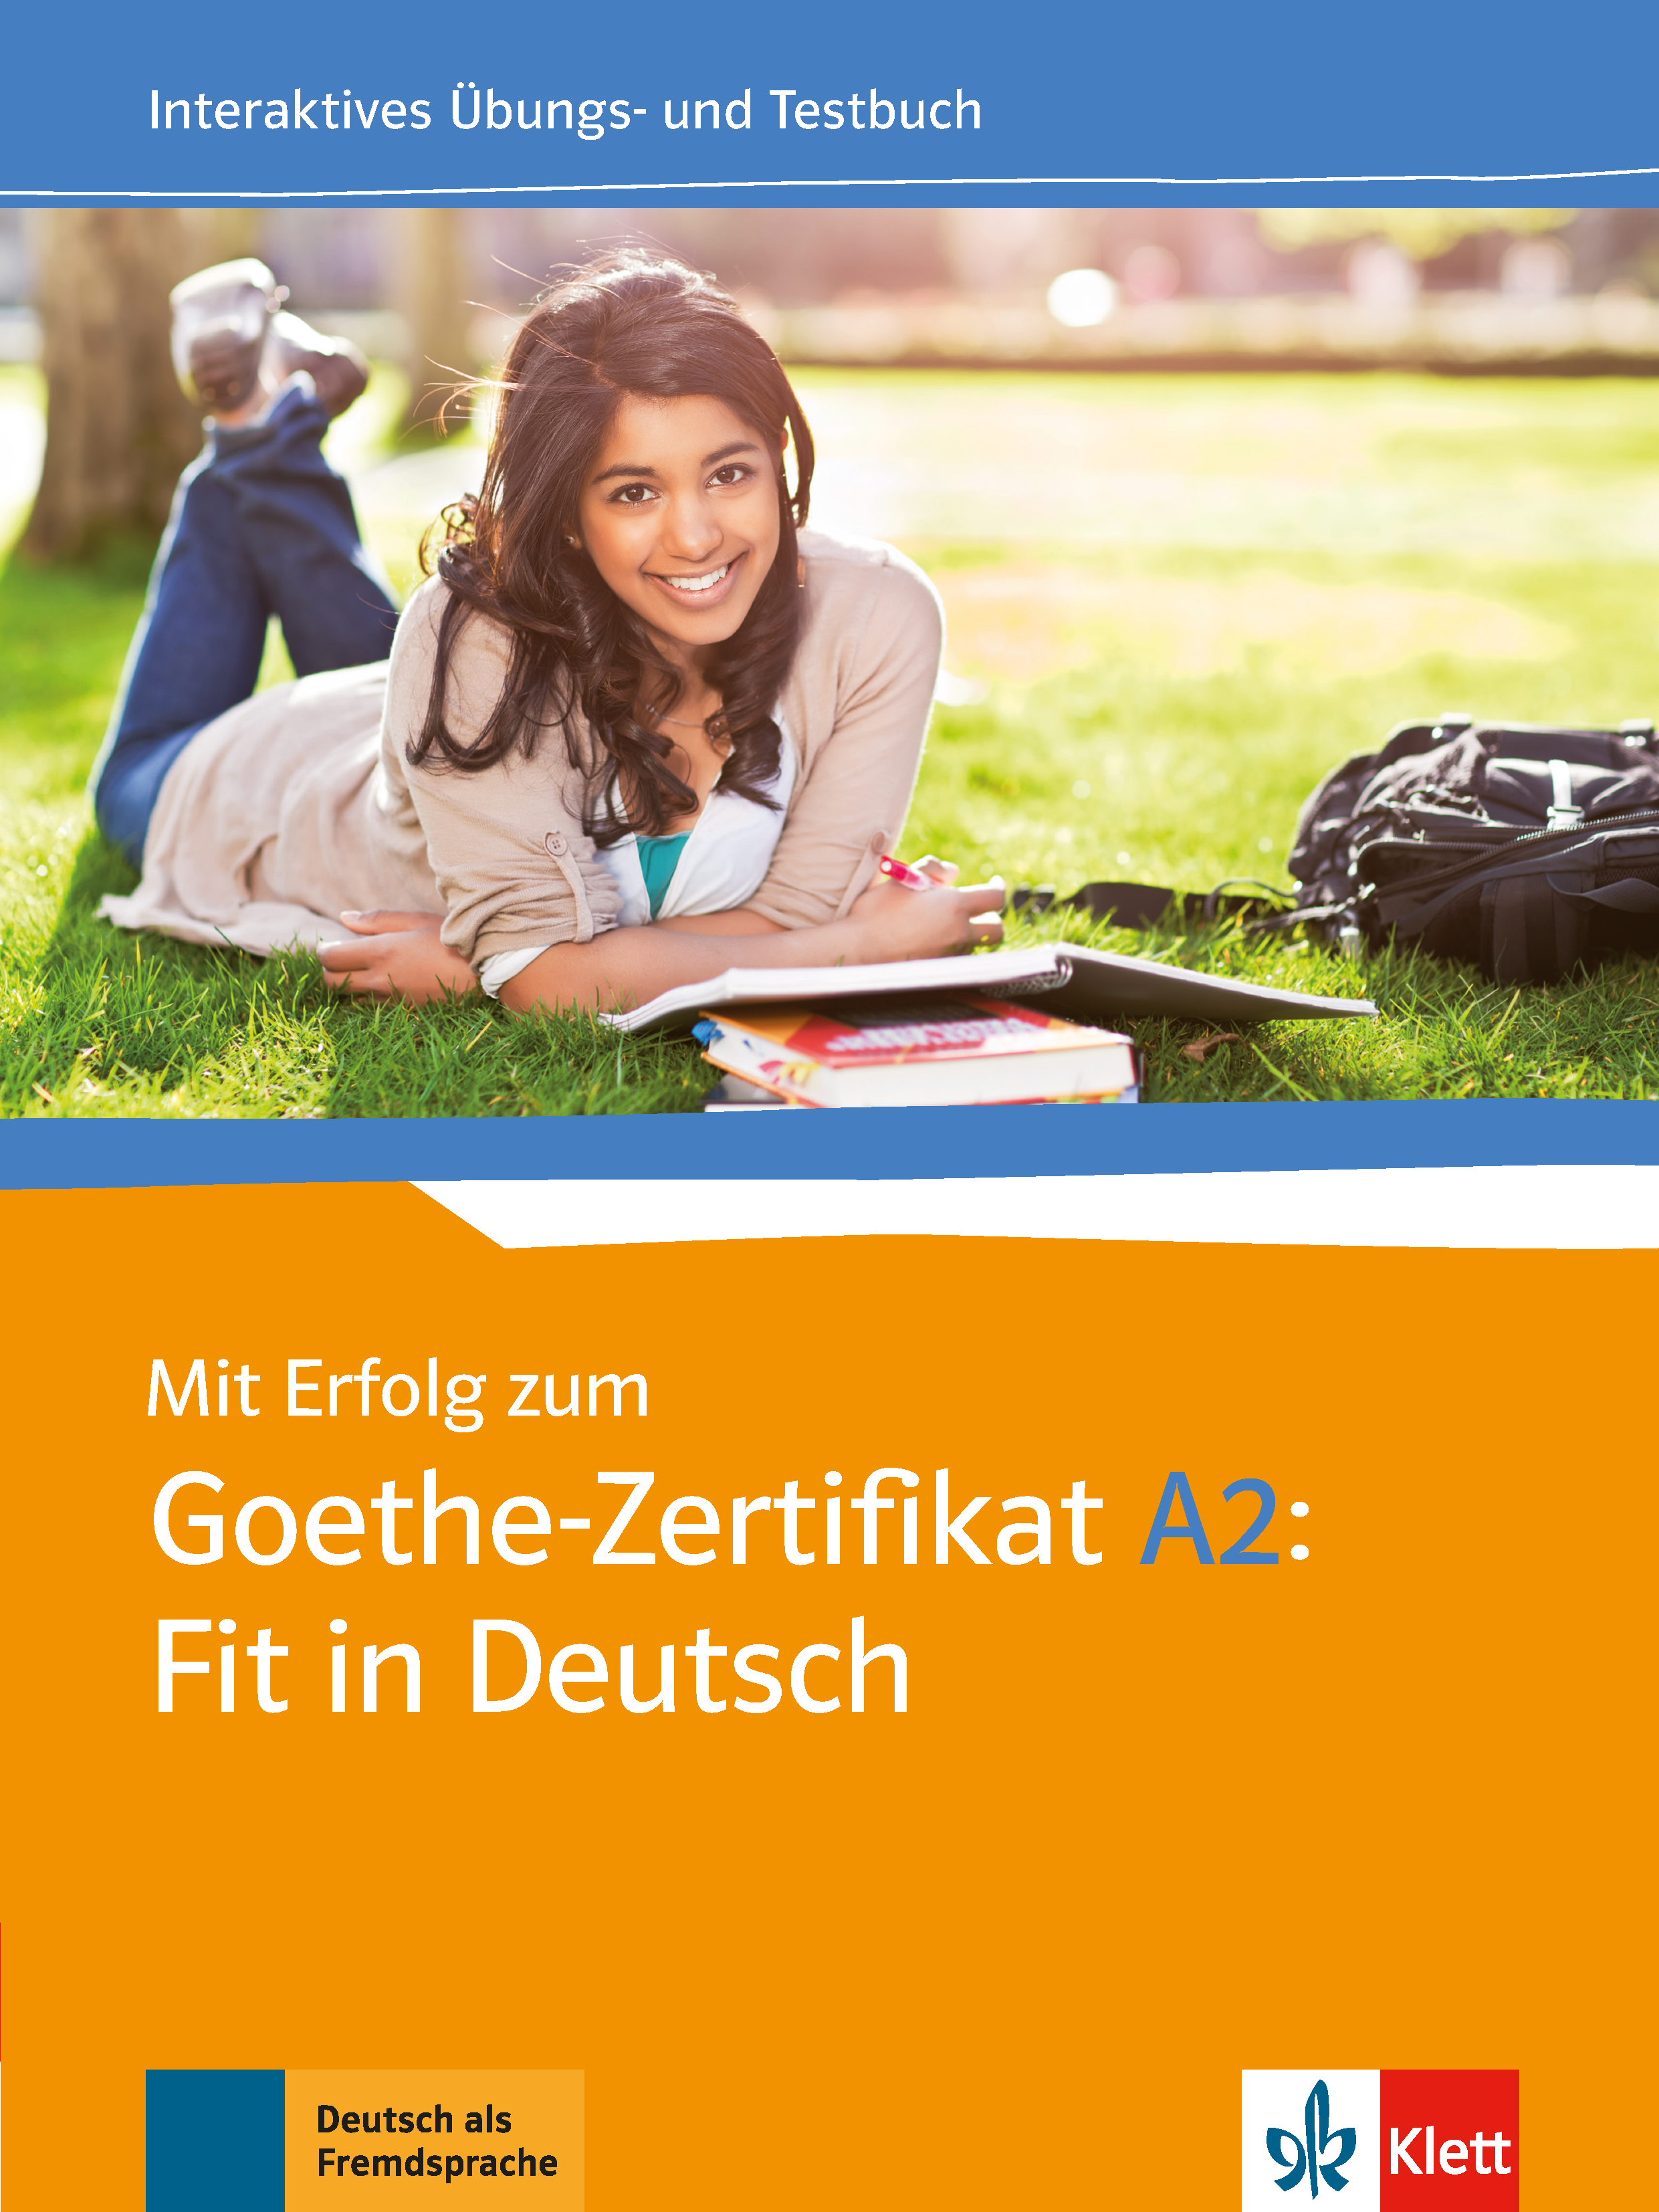 Mit Erfolg zum Goethe Zertifikat A2 interaktives Übungsbuch